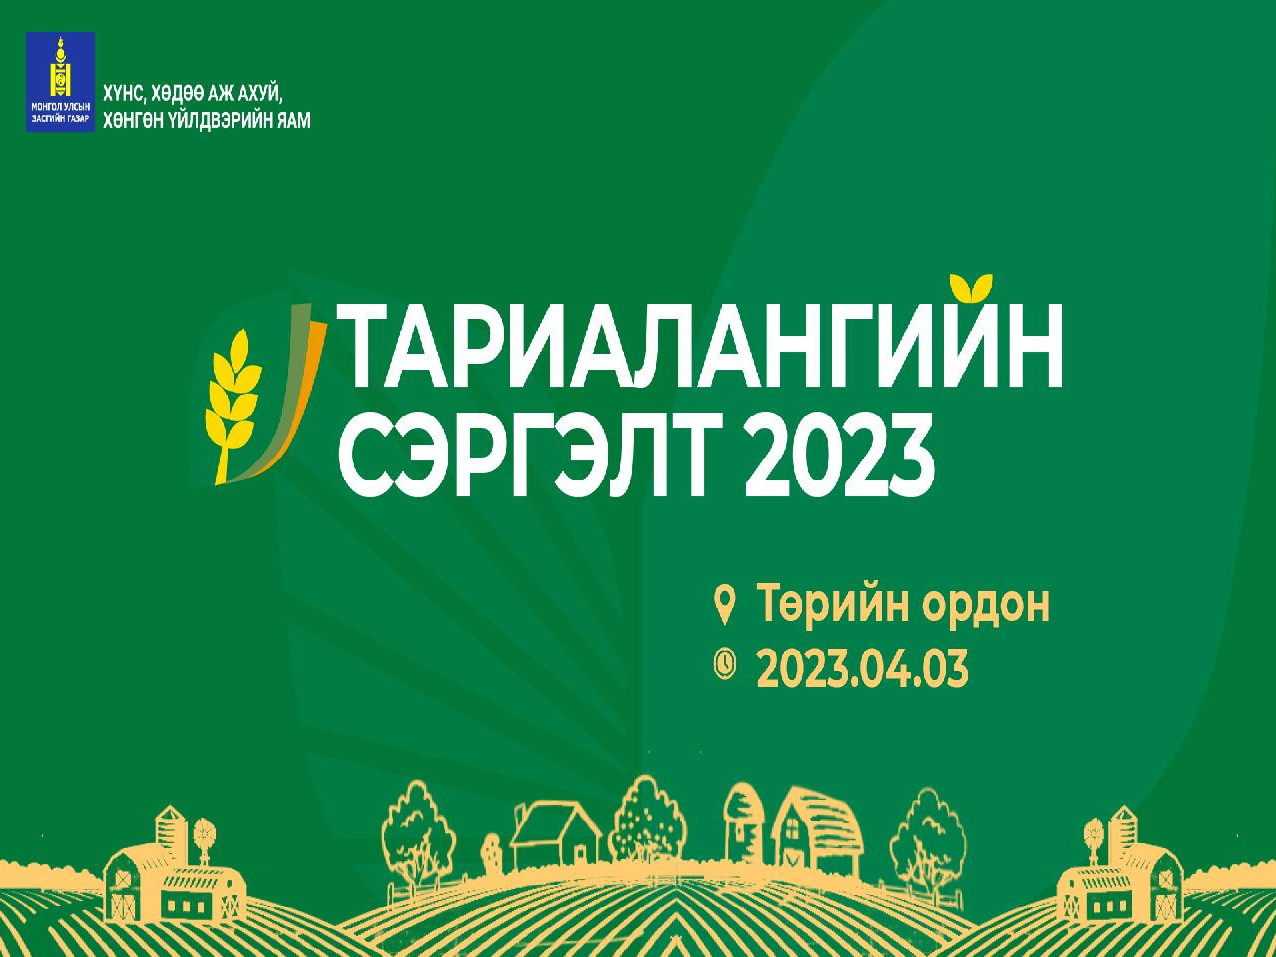 "Тариалангийн сэргэлт 2023" үндэсний чуулган болно